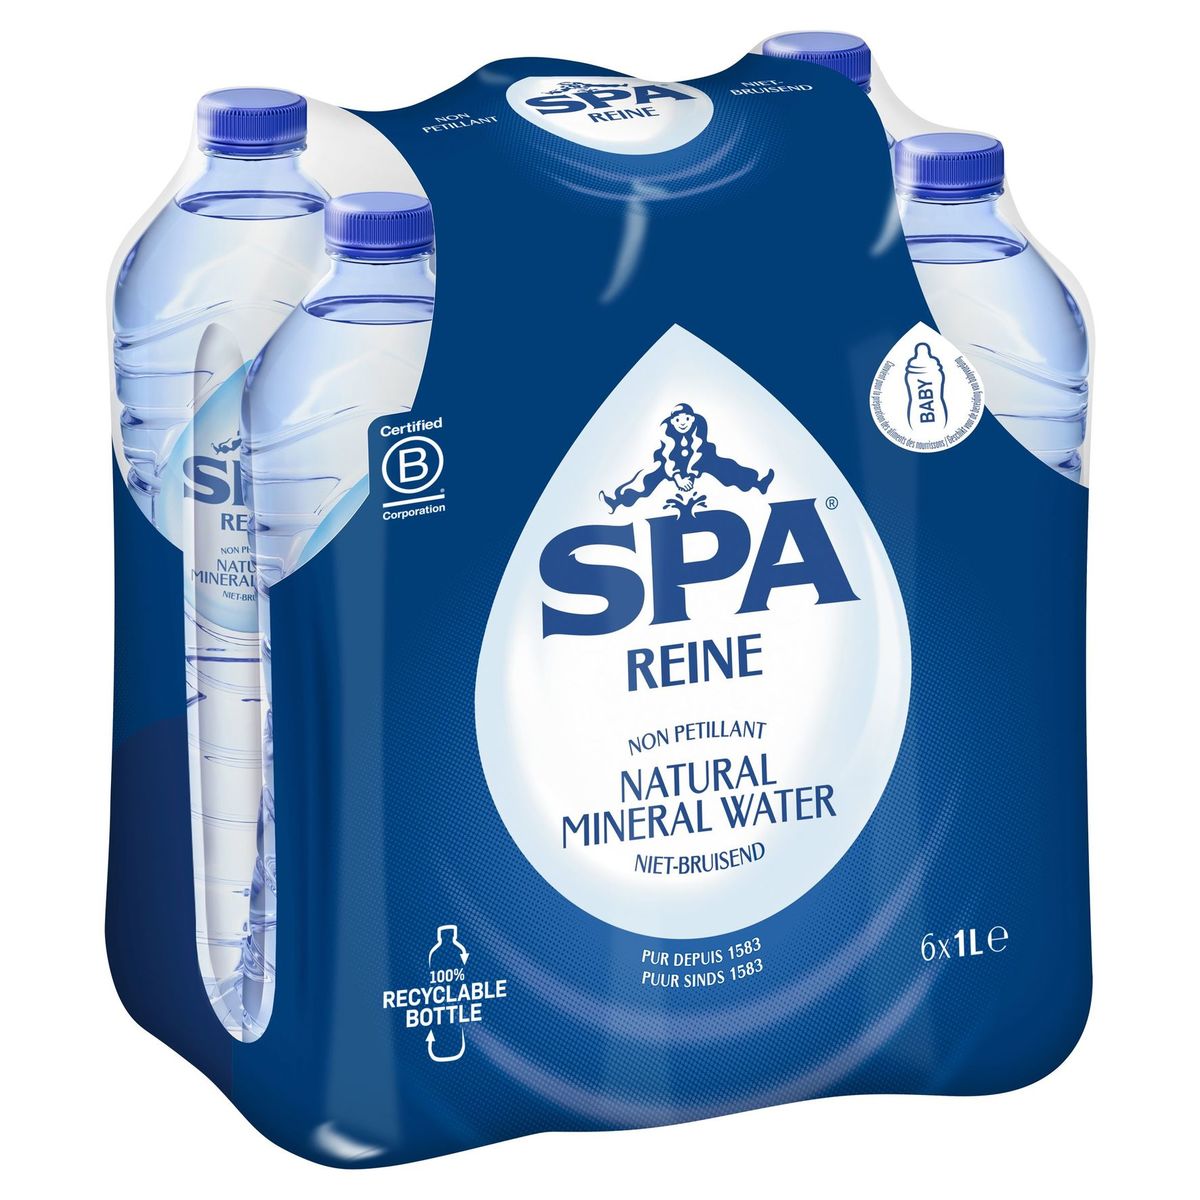 SPA Reine Niet-Bruisende Natural Mineral Water 6 x 1 L